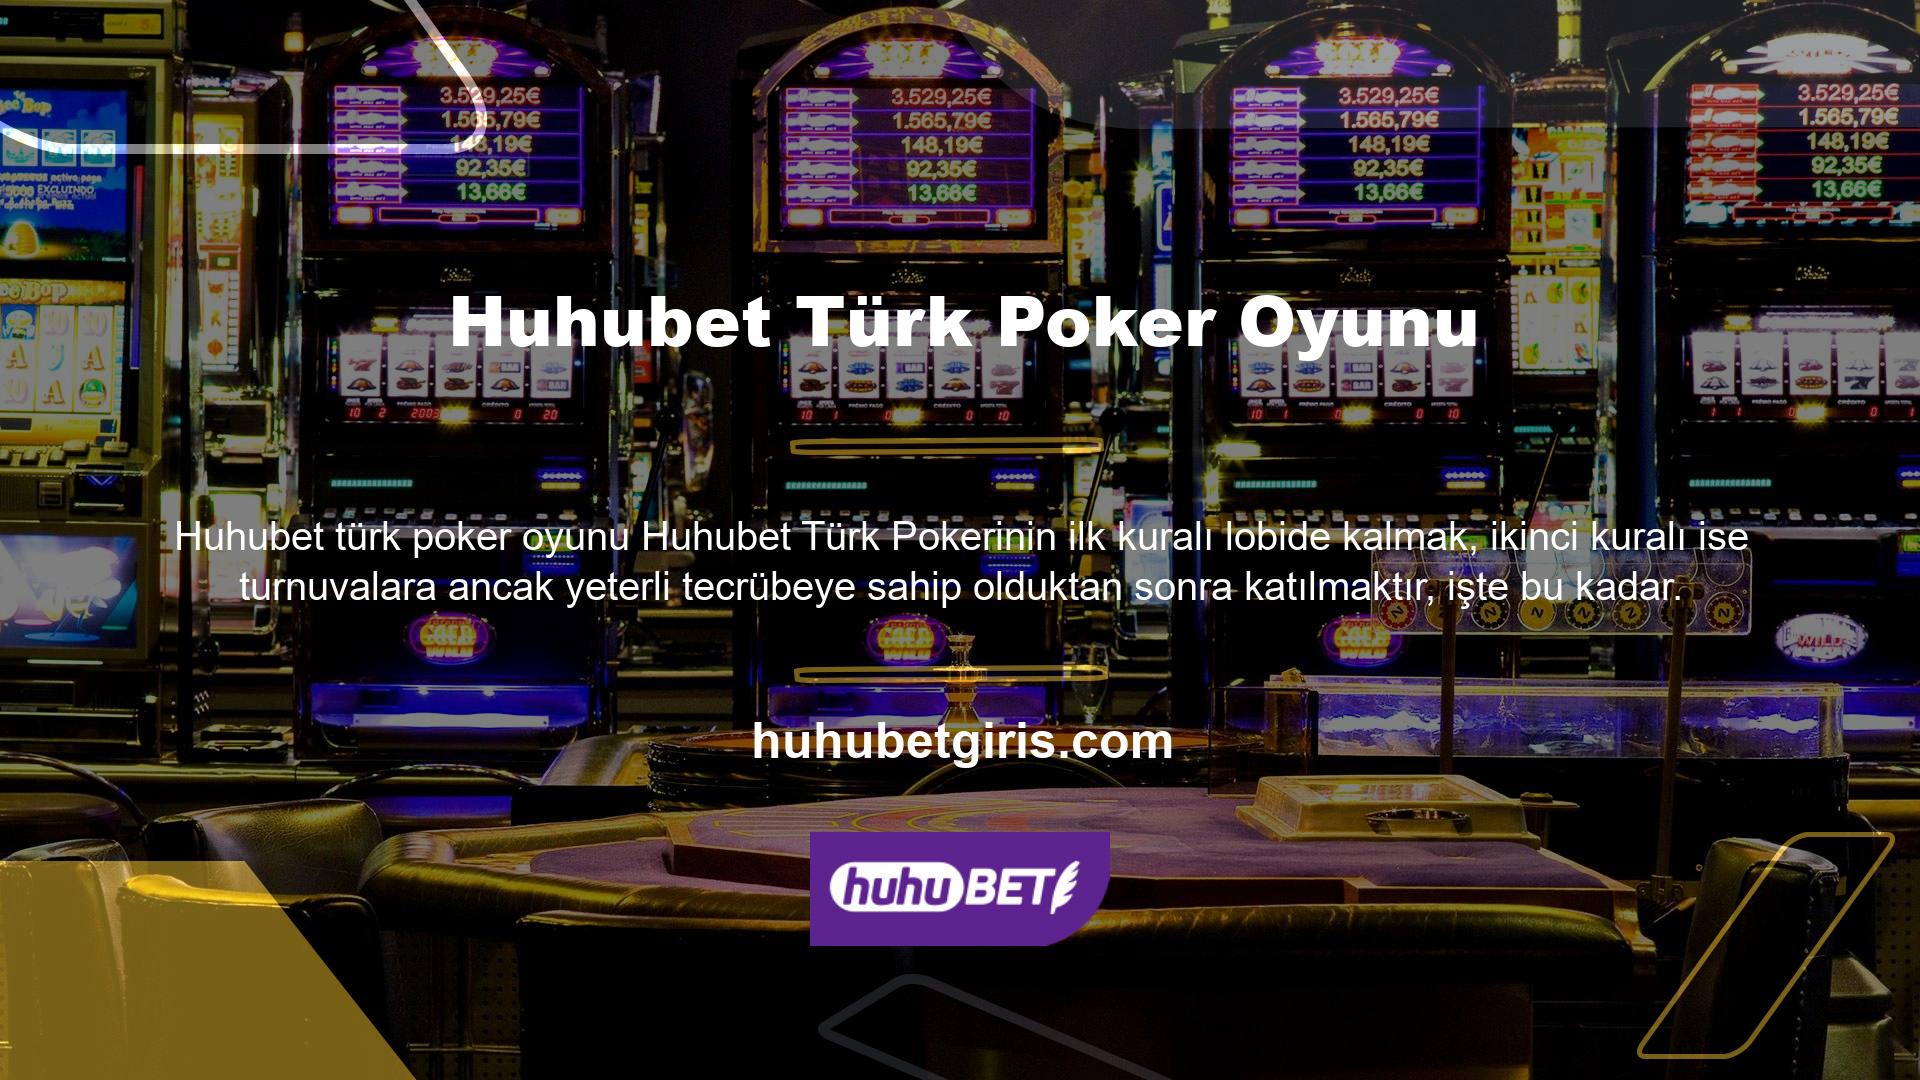 Türk poker turnuvaları salonun dışında, farklı rakiplerin olduğu masalarda yapılıyor